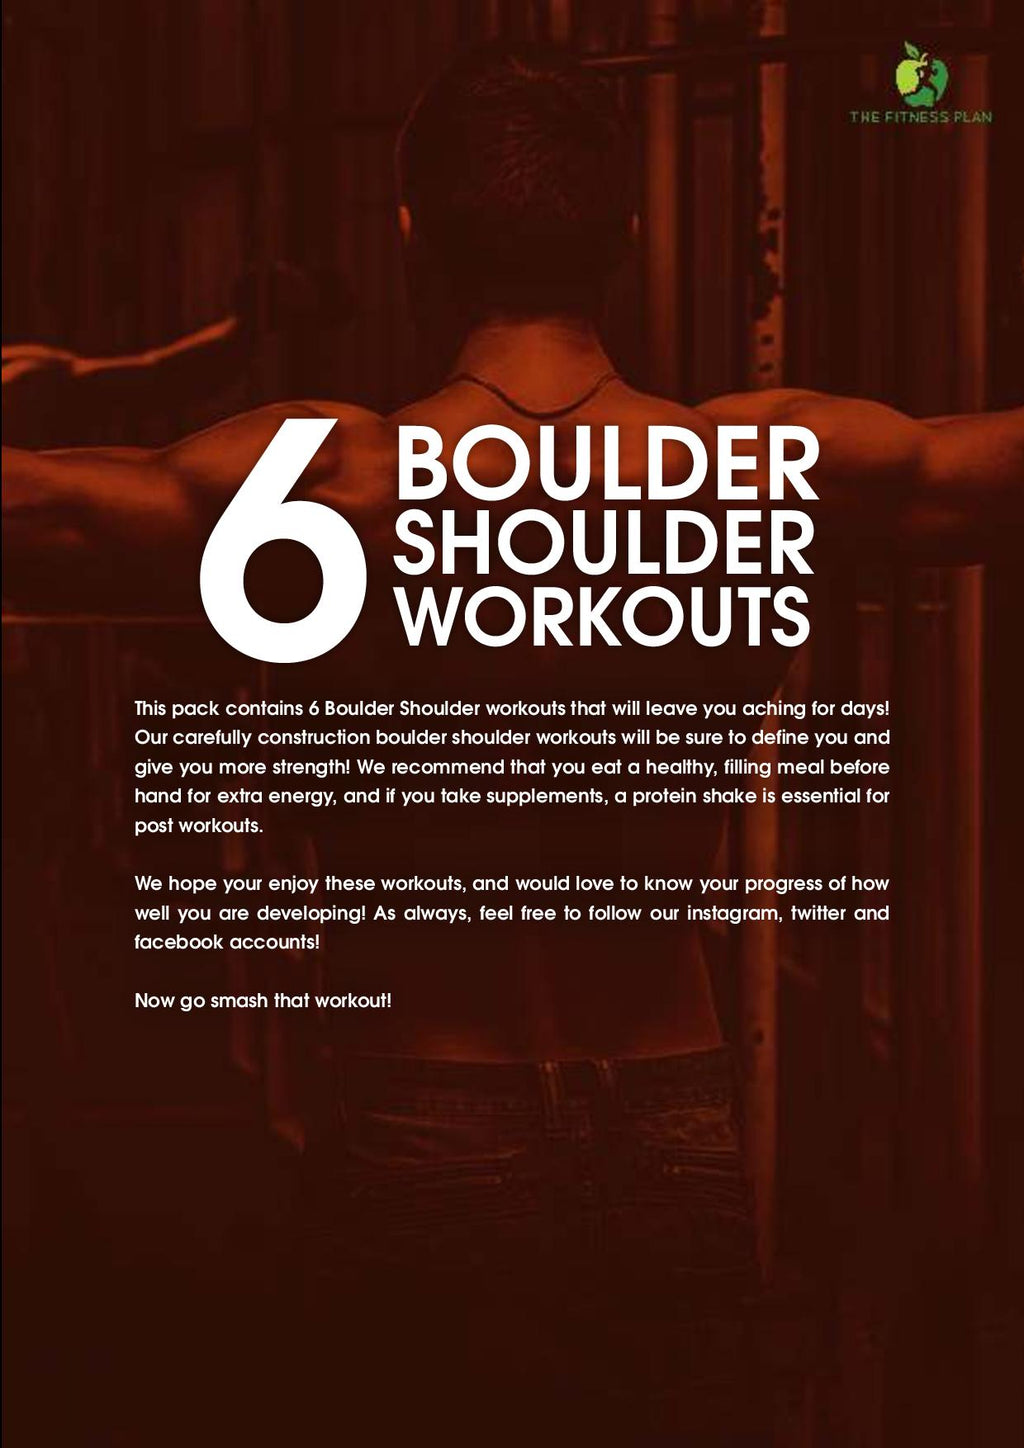 6 Boulder Shoulder Workouts